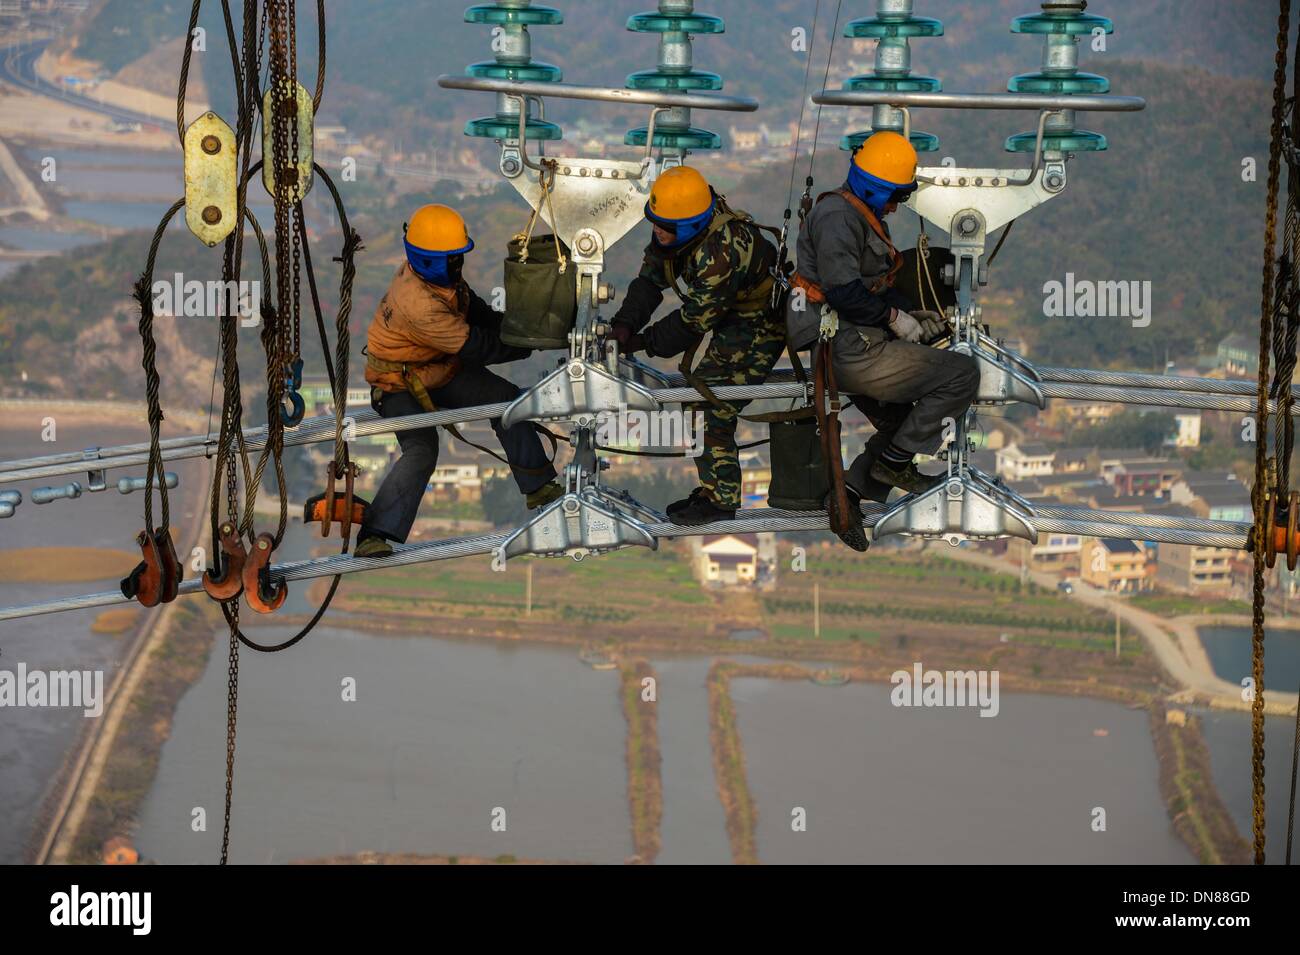 Zhoushan cinese della provincia dello Zhejiang. Xx Dec, 2013. Elettricisti opera su linee di trasmissione oltre 190 metri sopra il livello del suolo in Zhoushan, est della Cina di Provincia dello Zhejiang, Dic 19, 2013. La 500 kilovolt cross-mare di trasmissione di potenza di progetto è prevista da mettere in funzione dal gennaio 2014. Il 36,5 chilometri di progetto, di cui 8,39 chilometri si incontra il mare, è stata la più lunga del suo genere in Cina finora. © Xu Yu/Xinhua/Alamy Live News Foto Stock